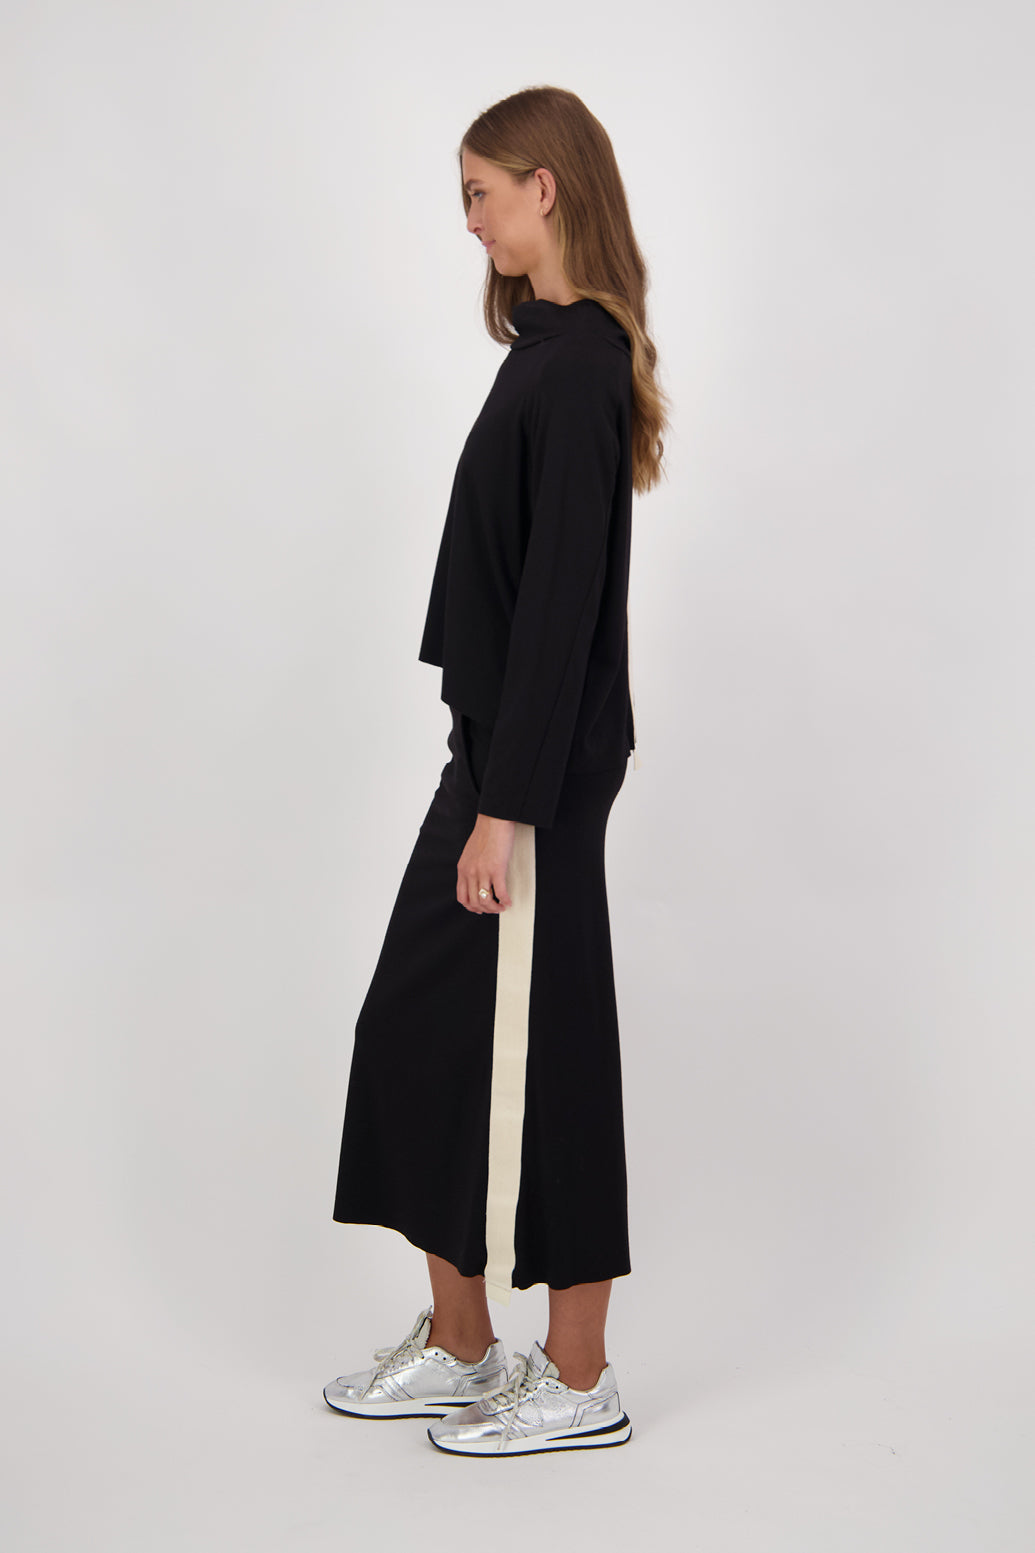 Colette Black Skirt with Side Stripe